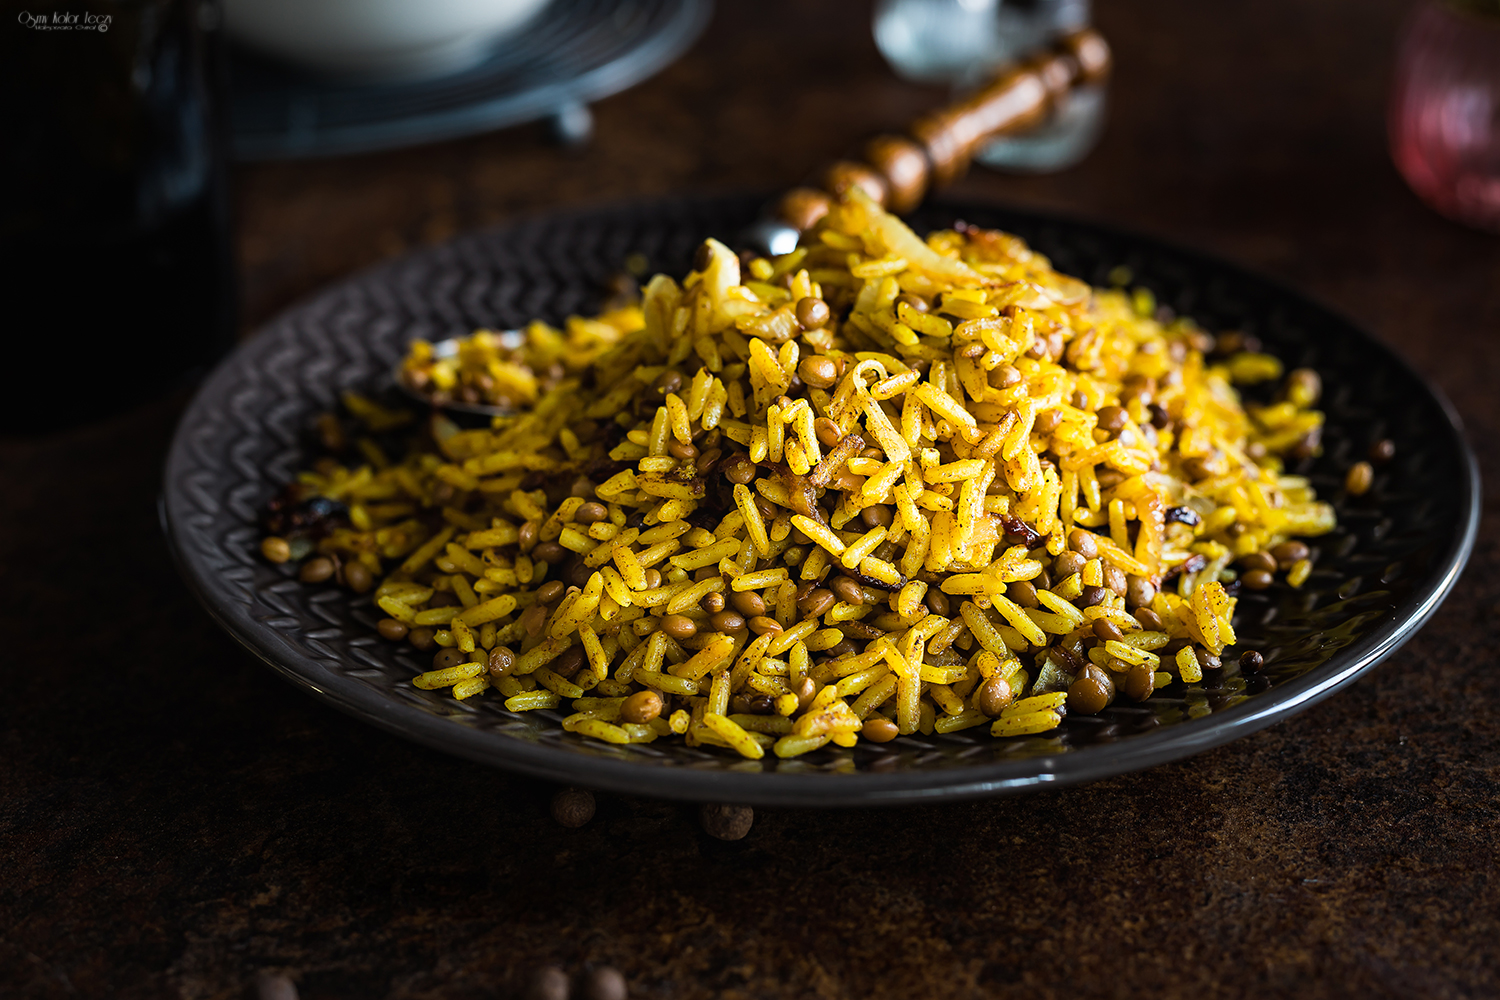 mejadra - ryż z soczewicą po arabsku